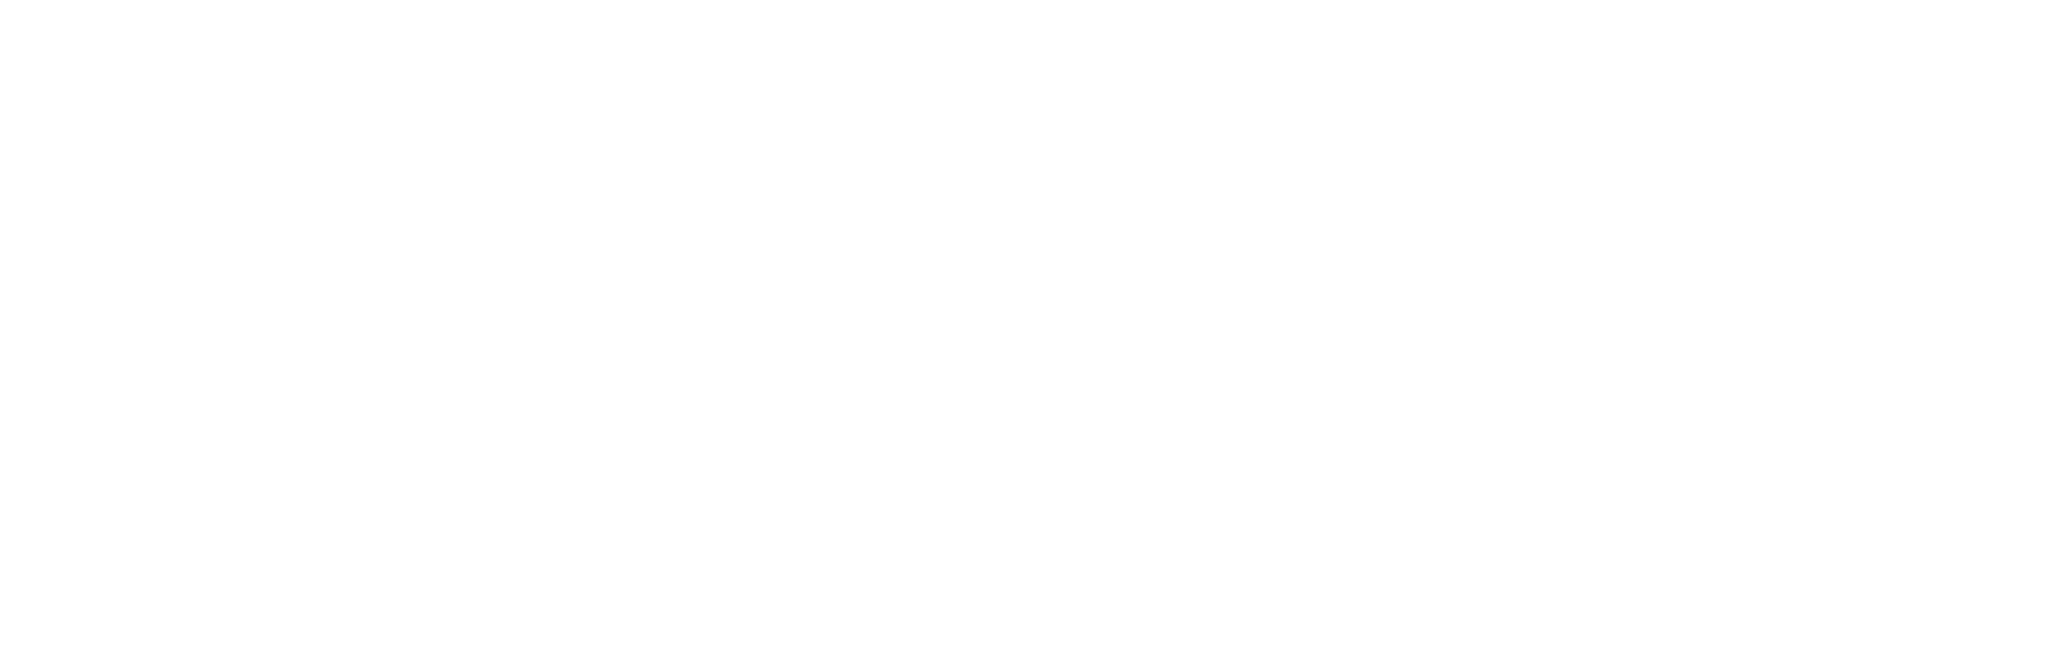 Set Free Logo